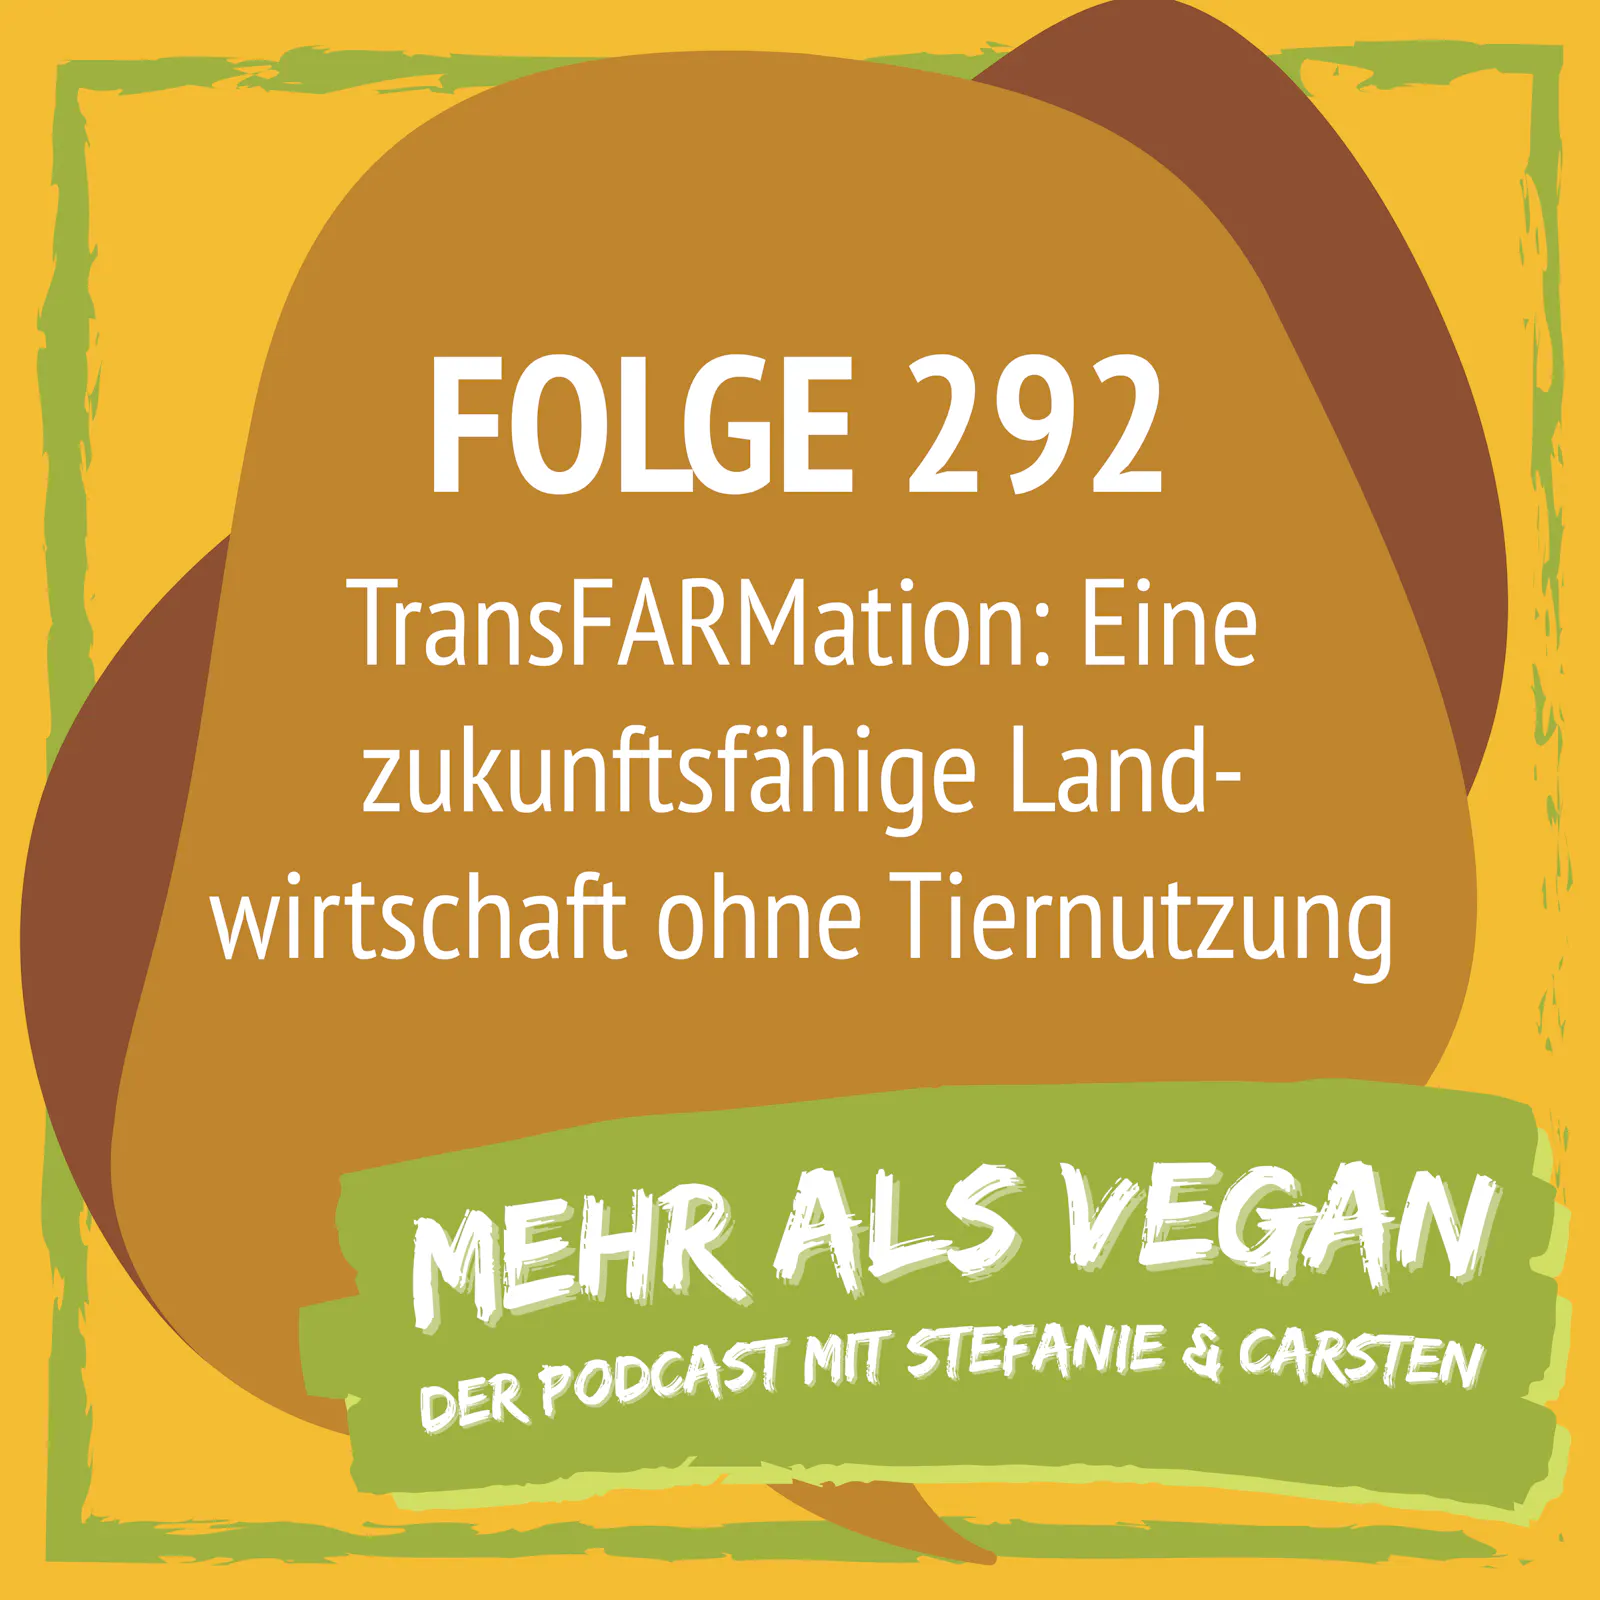 Folge 292 - TransFARMation: Eine zukunftsfähige Landwirtschaft ohne Tiernutzung